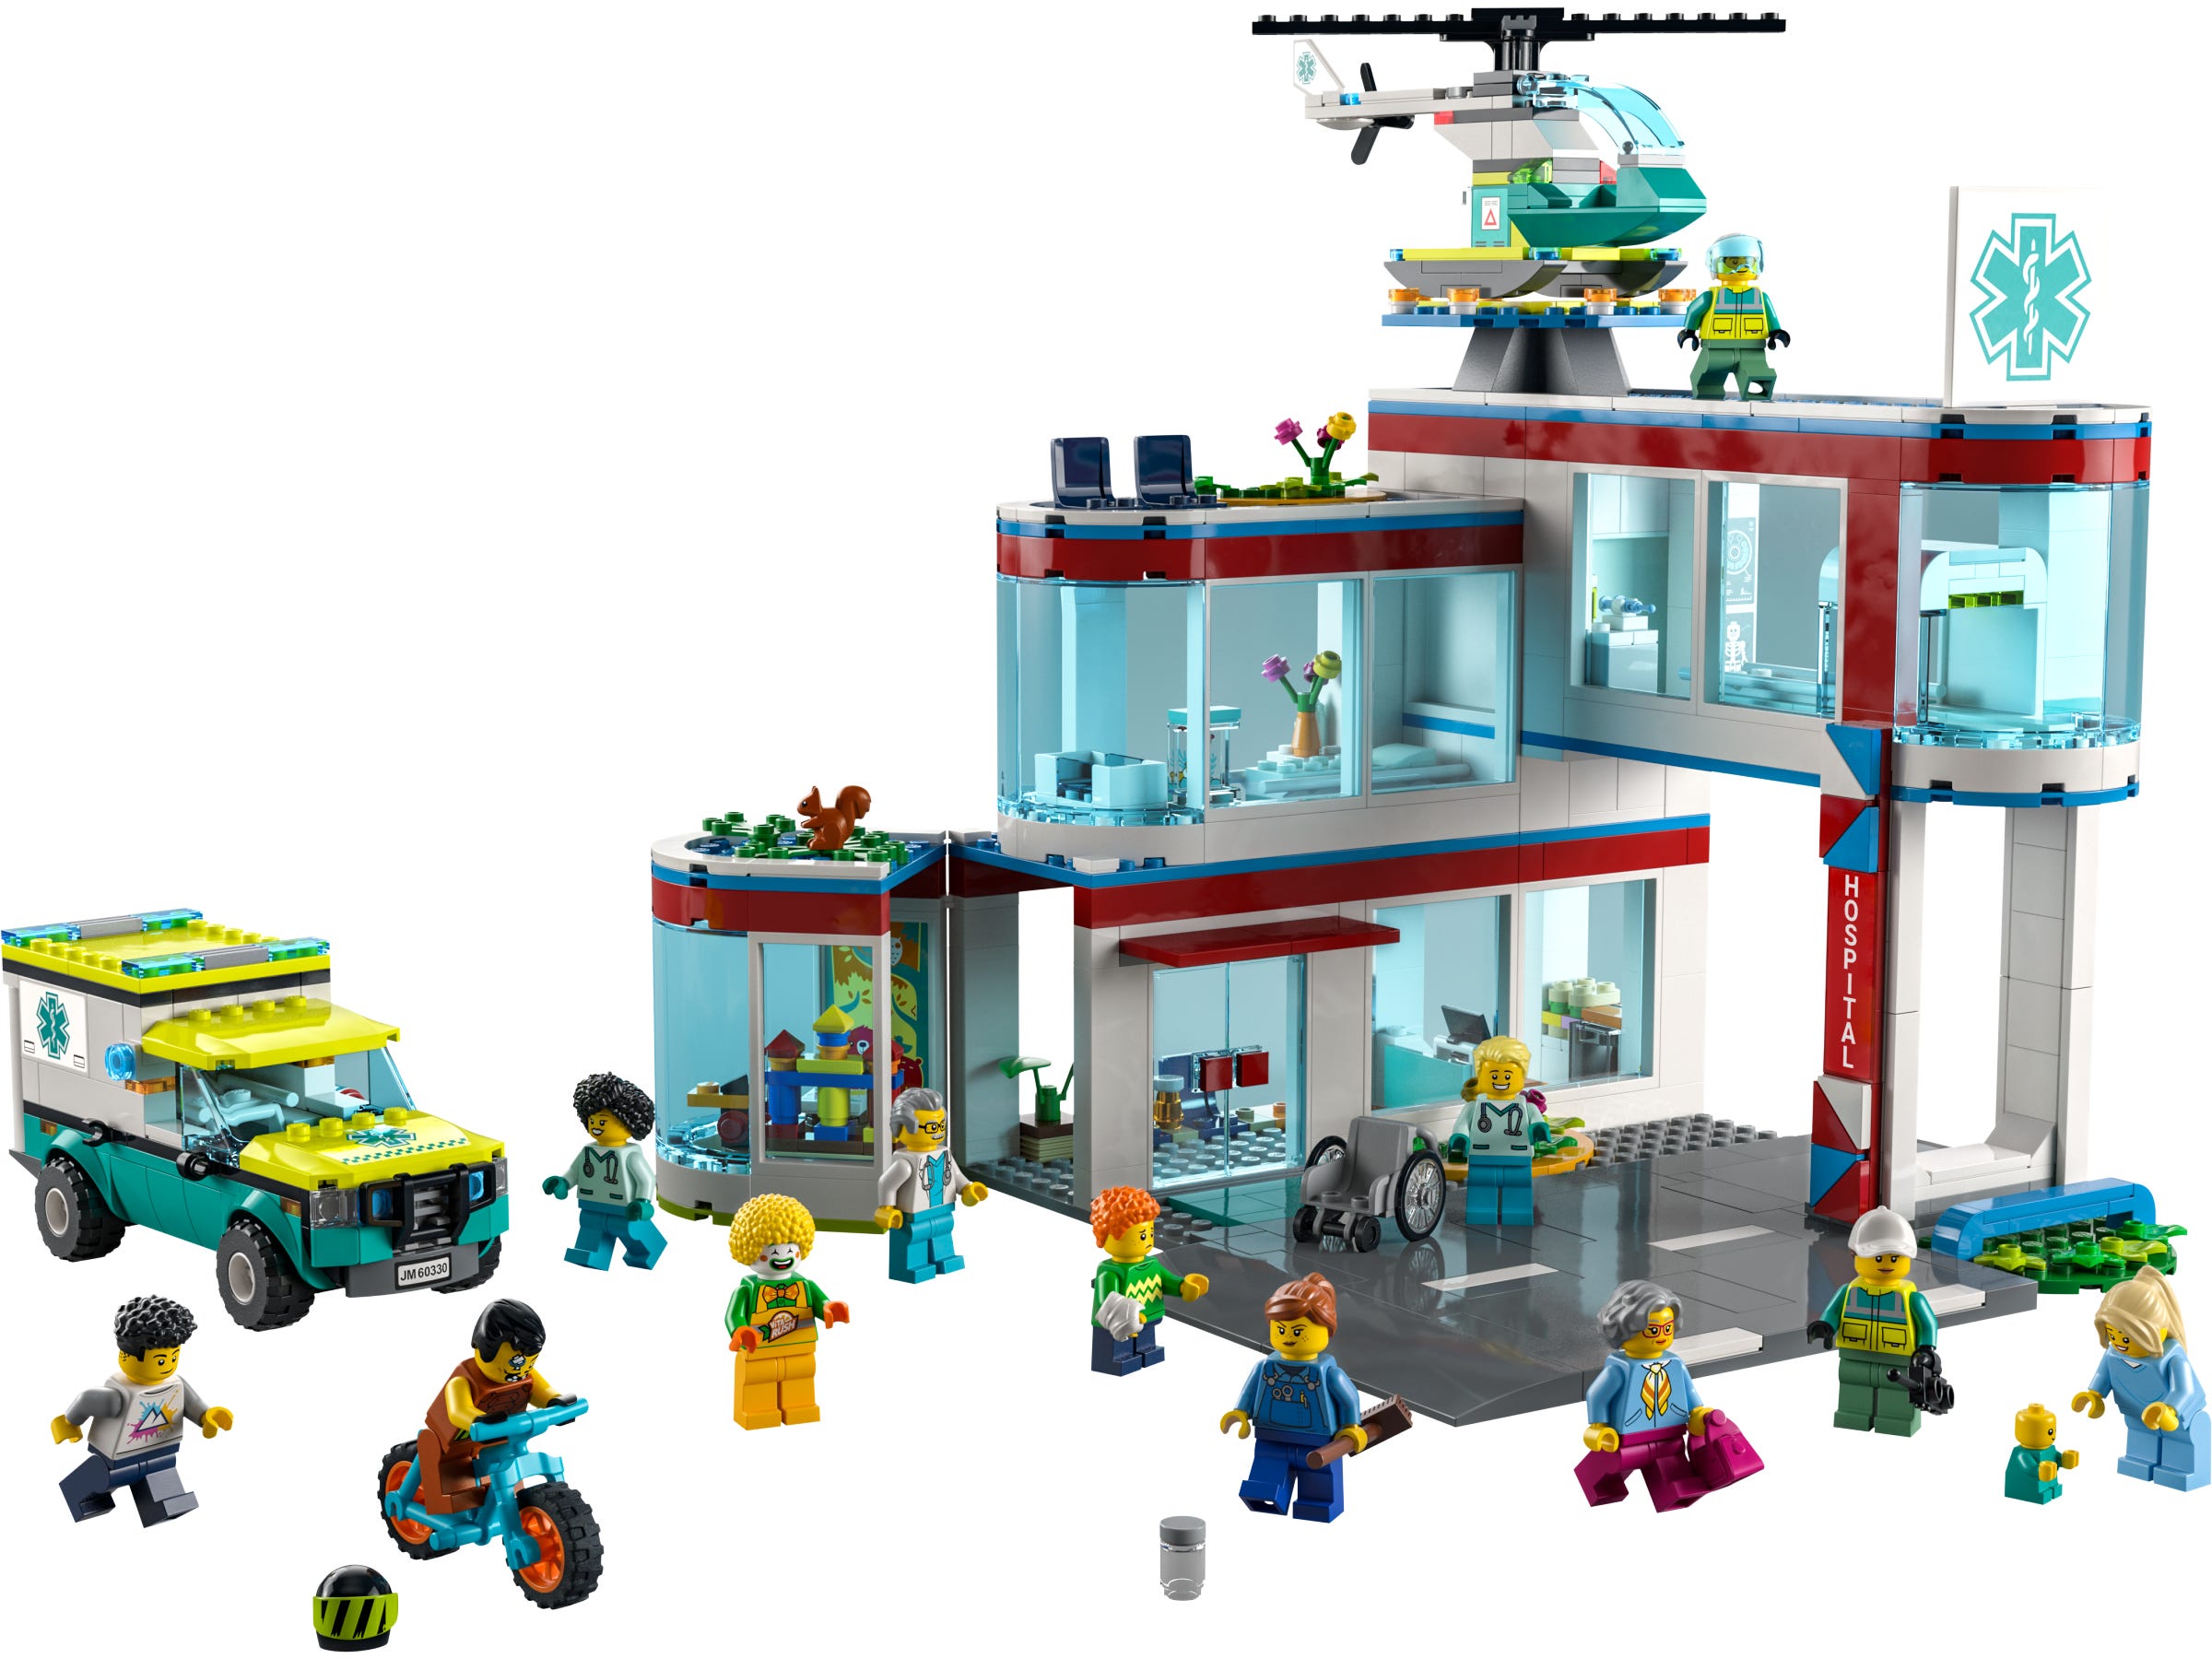 LEGO Hospital